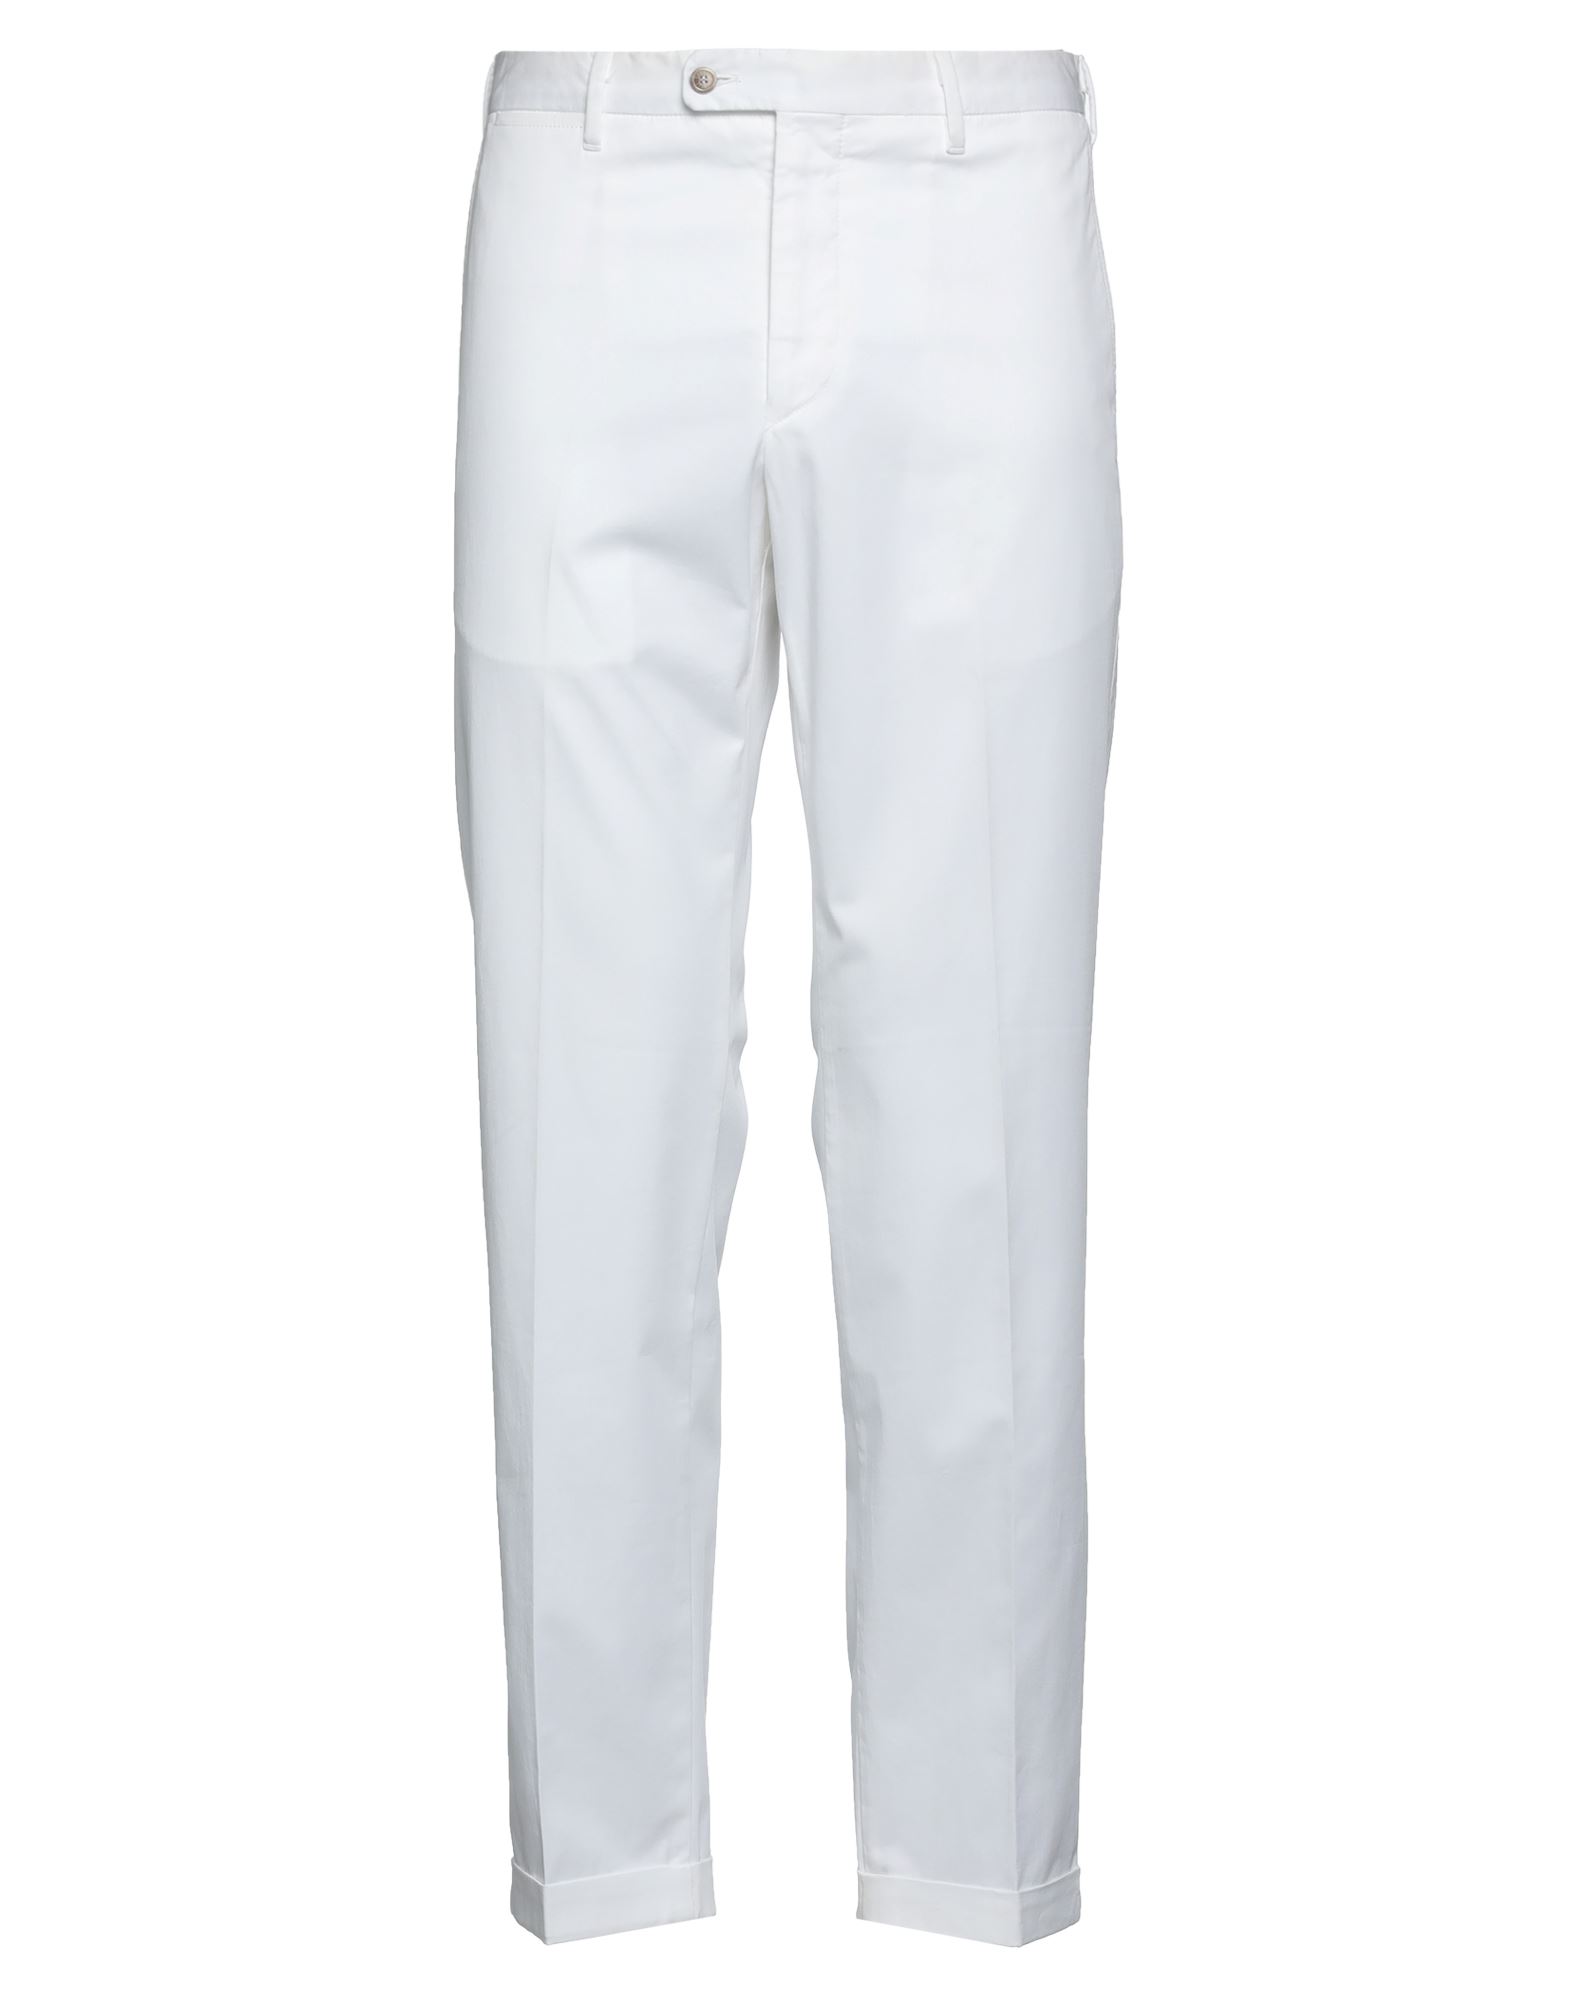 Shop Fedeli Man Pants White Size 40 Cotton, Lycra